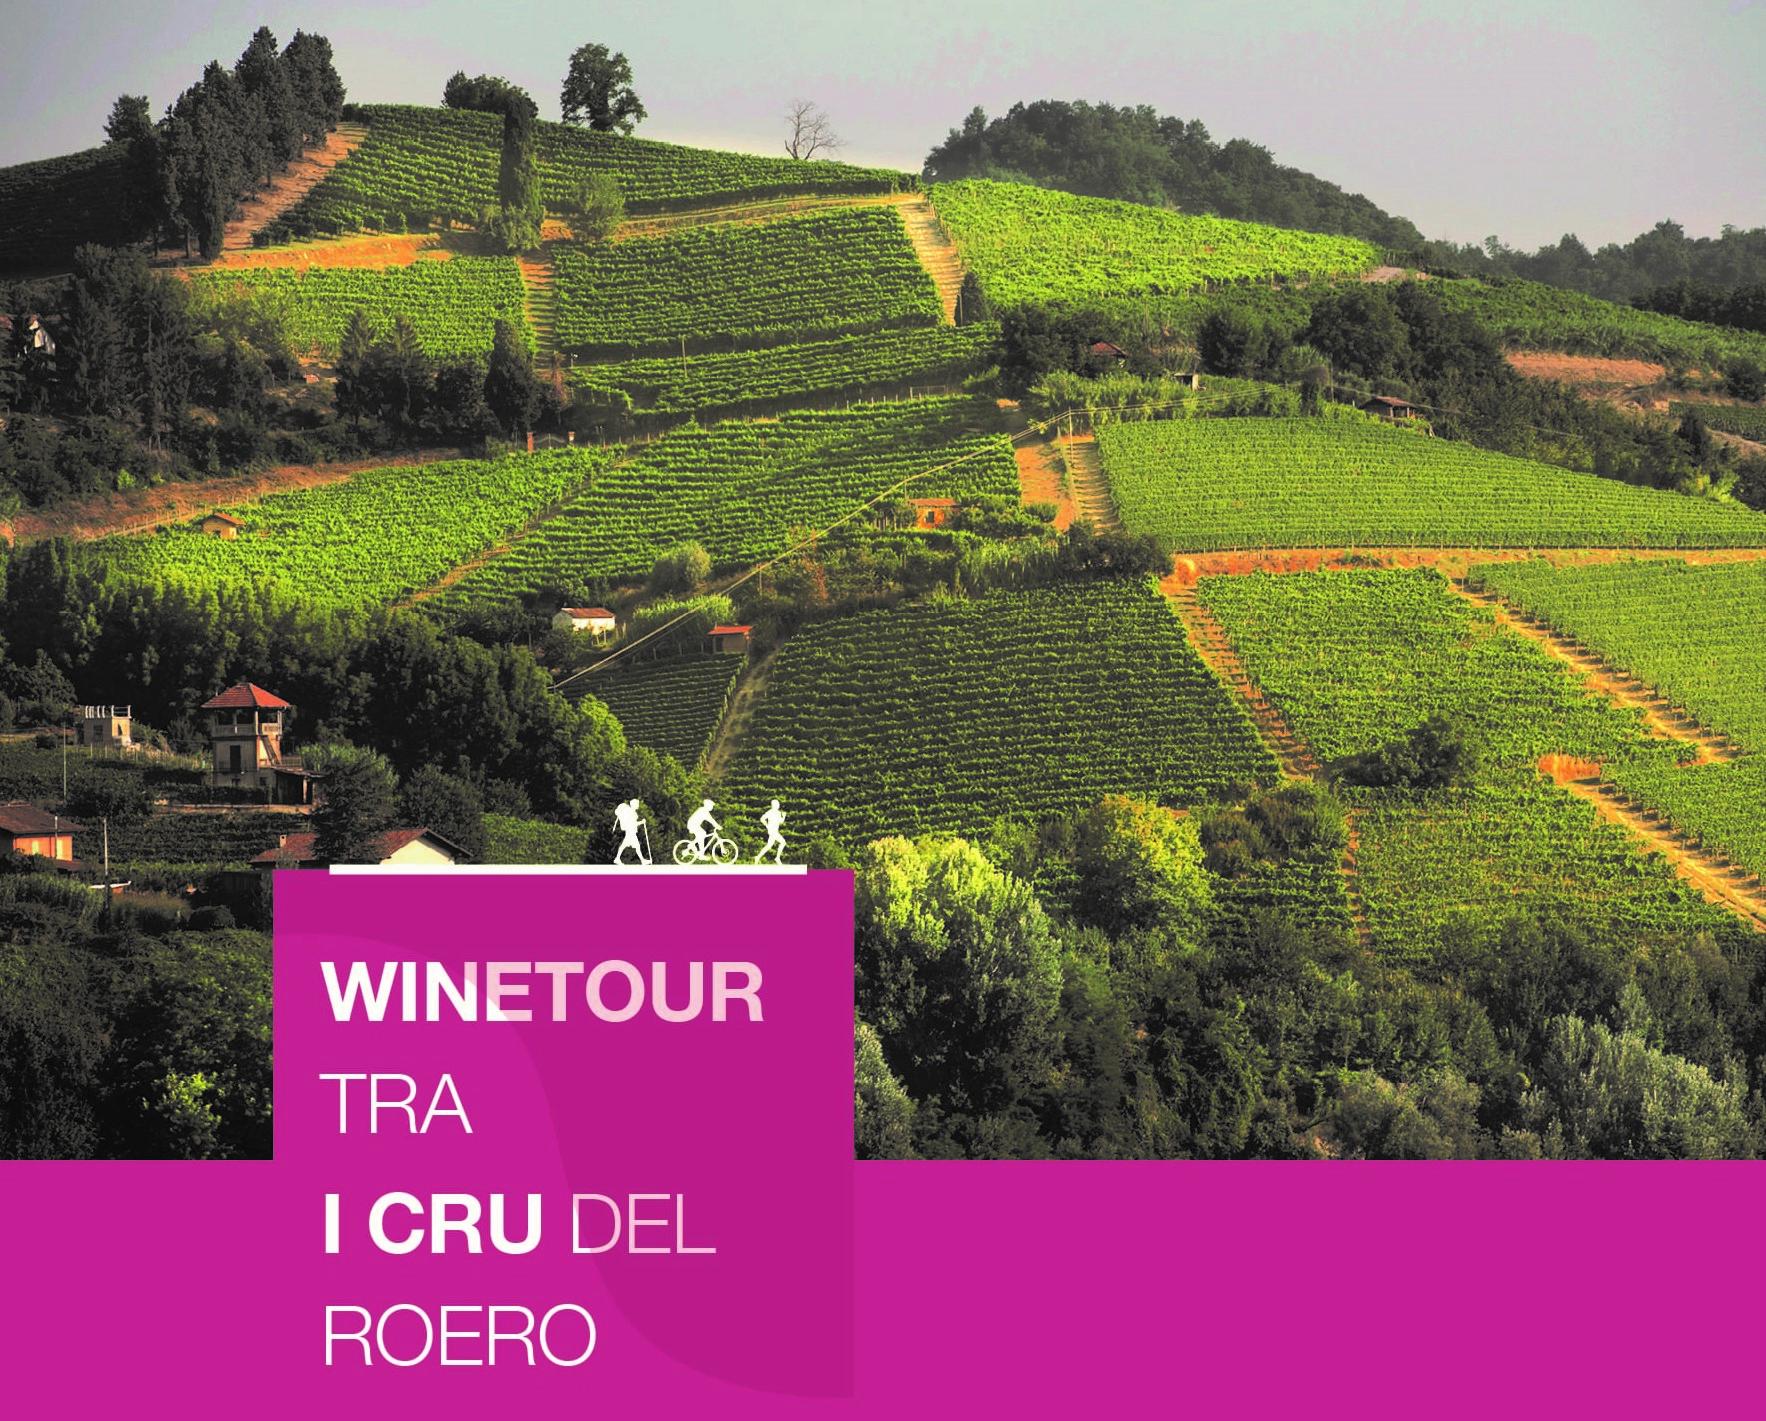 WineTour tra i Cru del Roero